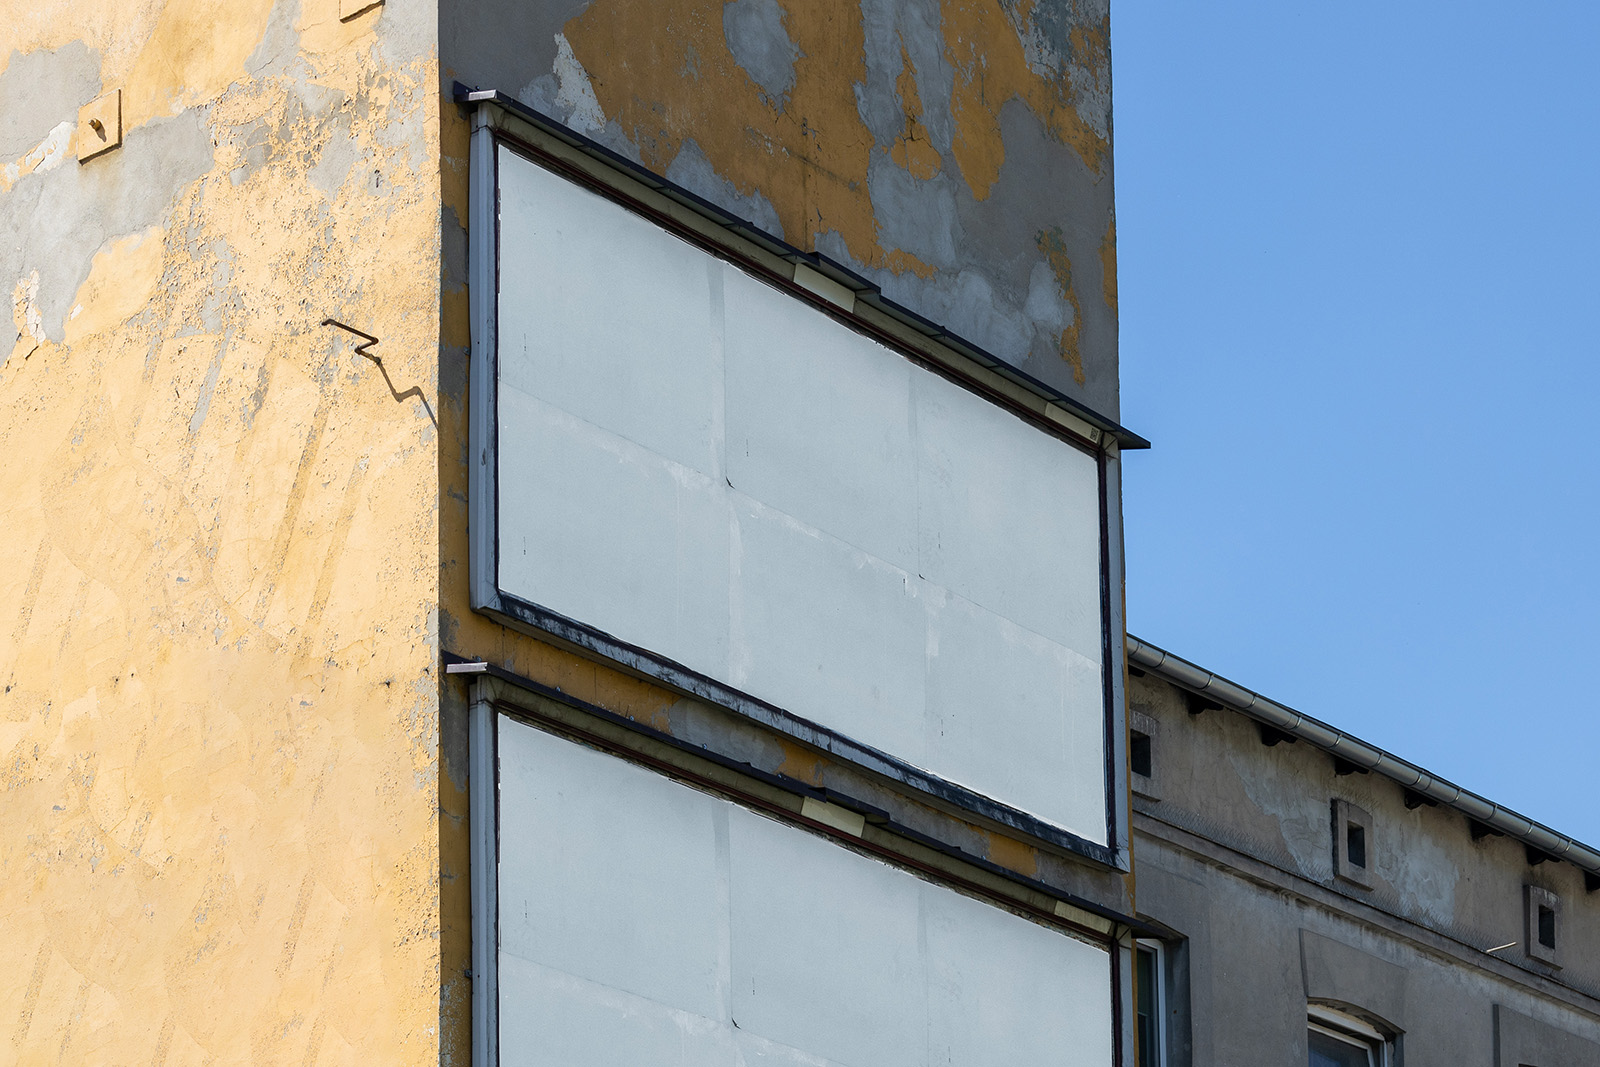 Billboards on old damaged building mockup